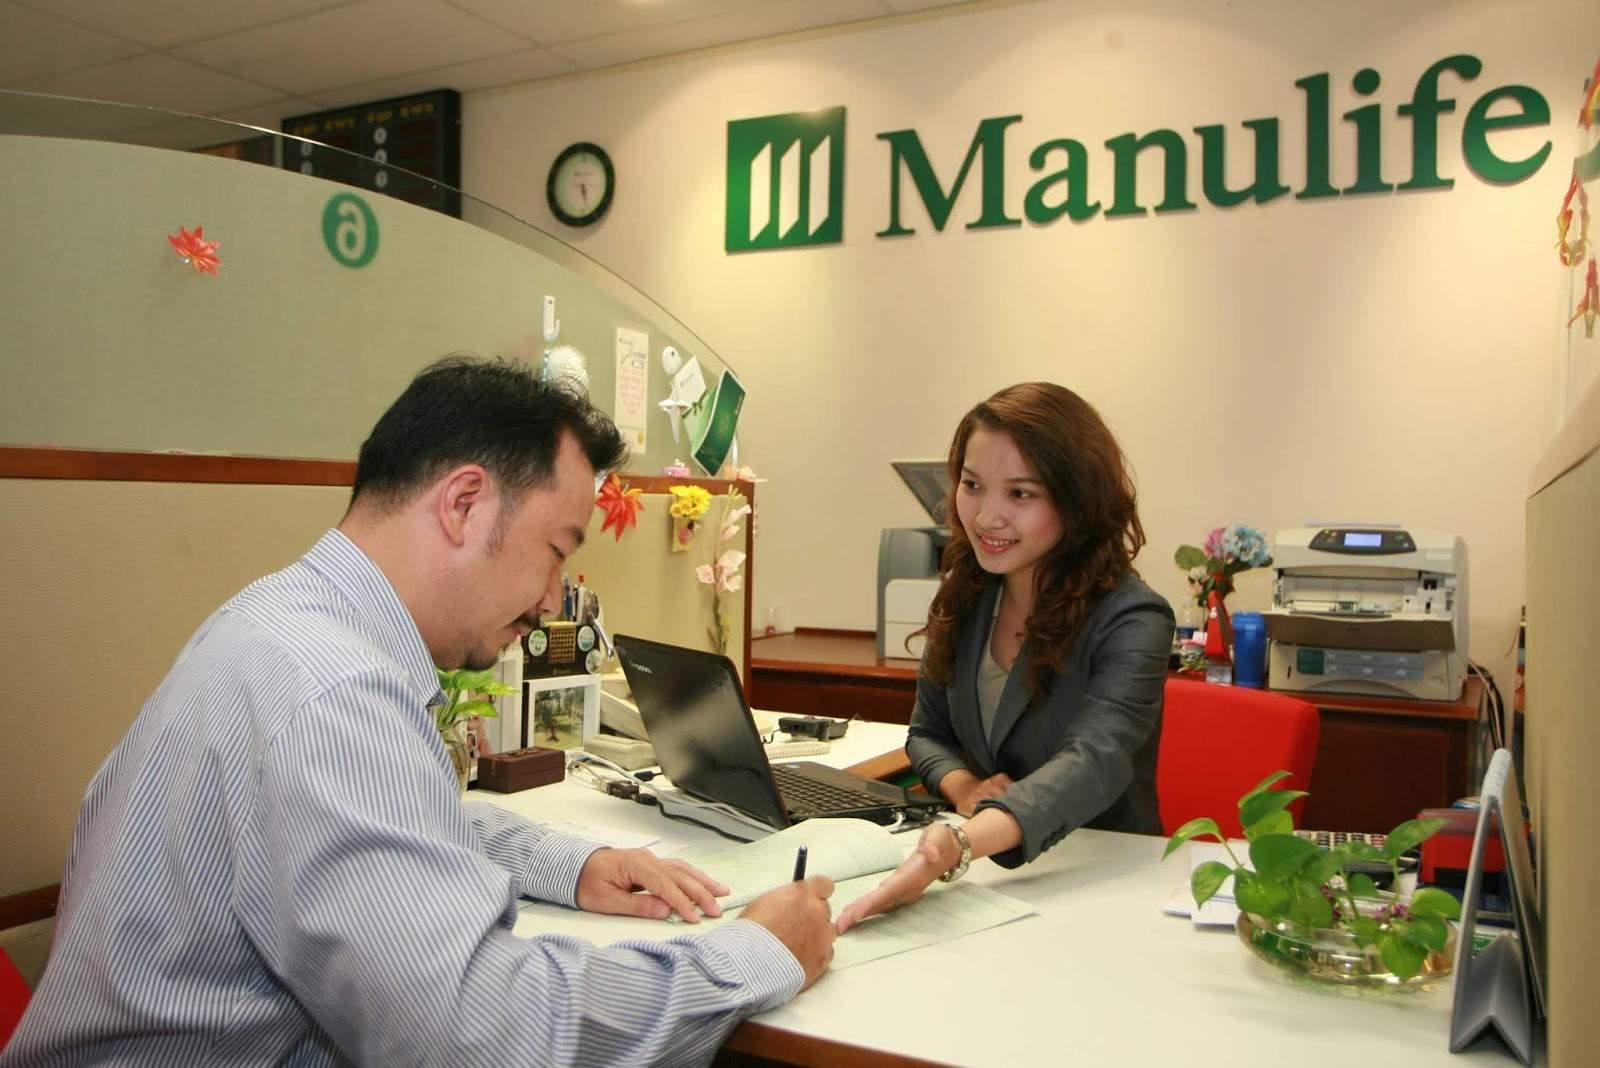 Manulife Việt Nam báo lãi kỷ lục, nắm giữ hơn 60.000 tỷ đồng trái phiếu và 13.700 tỷ tiền gửi ngân hàng